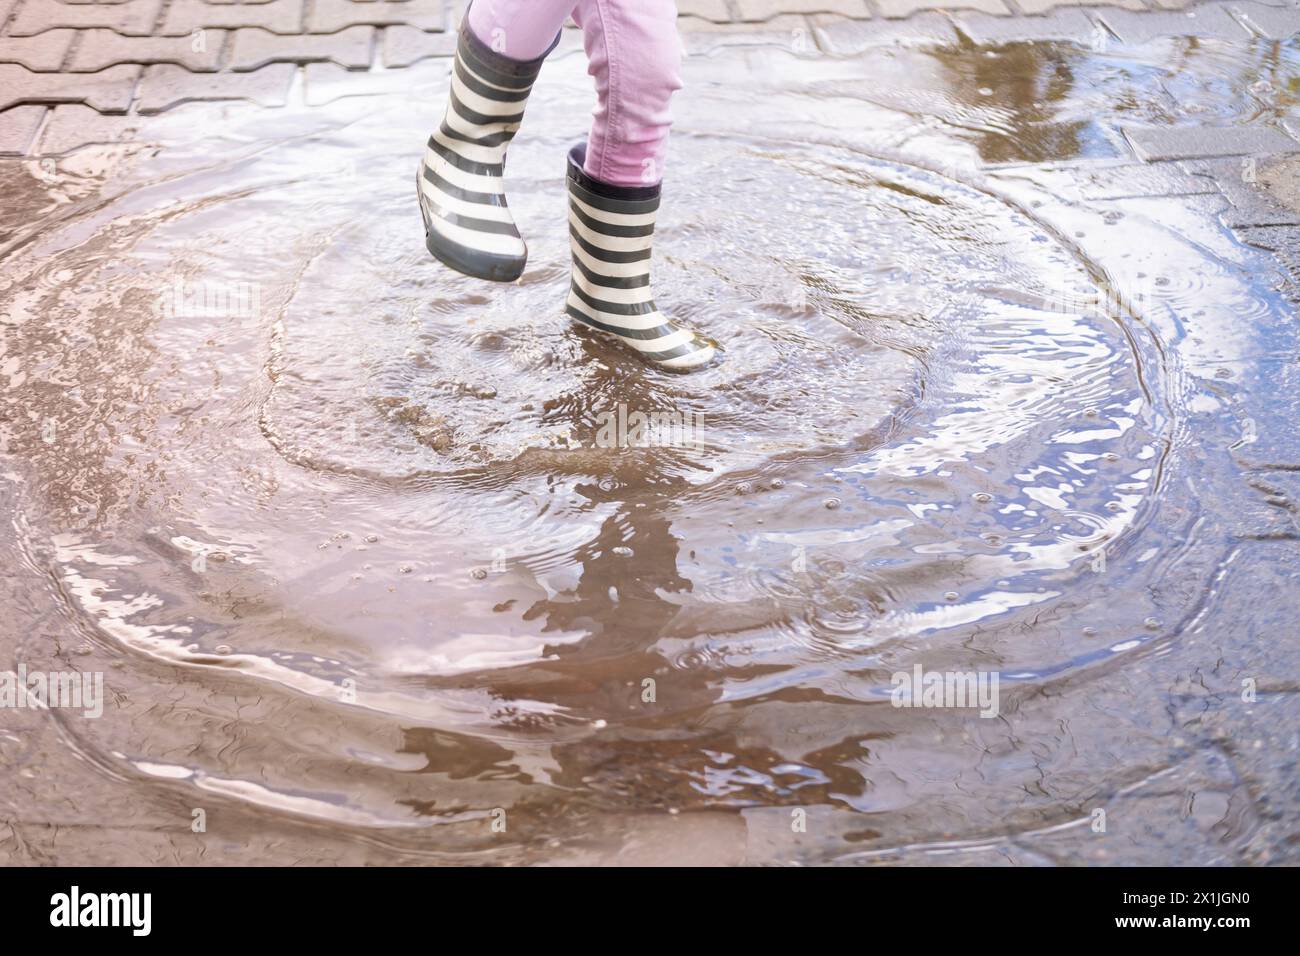 primo piano, la bambina di 5 anni salta gioiosamente in un pozzetto indossando stivali di gomma, i piedi dei bambini in schizzi d'acqua, saltando felicemente, i piaceri dell'infanzia Foto Stock